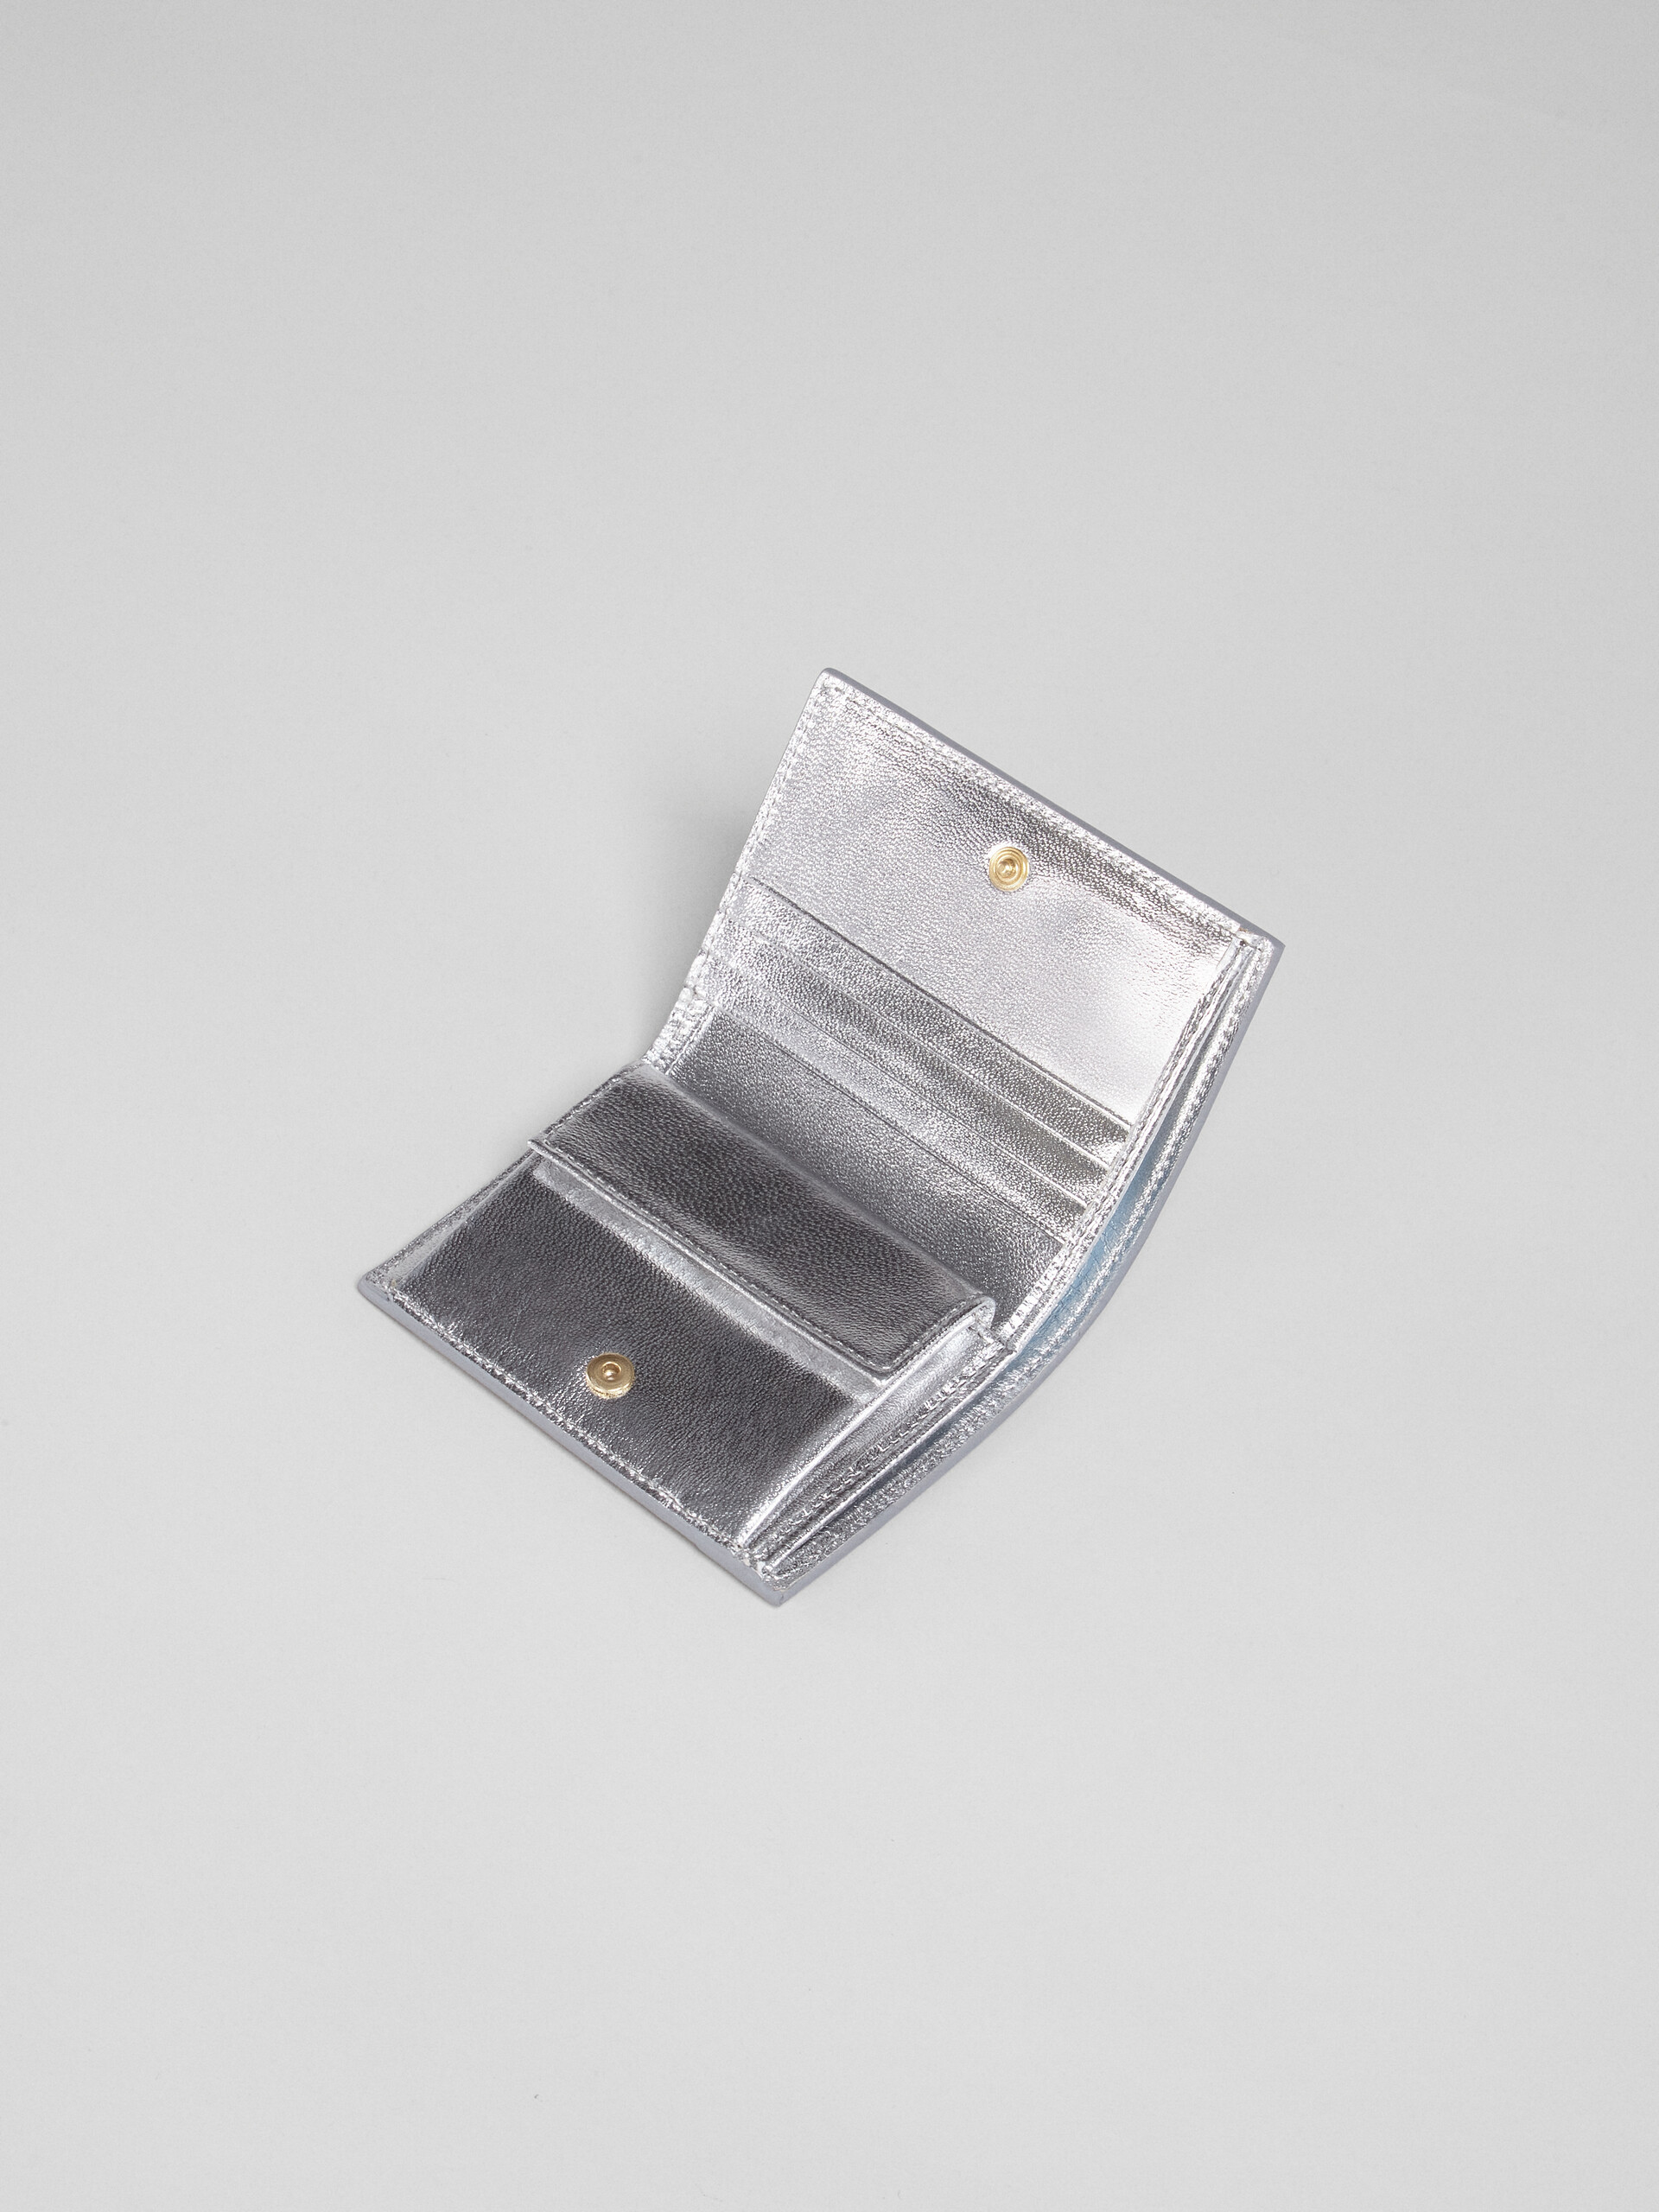 Portafoglio bi-fold in nappa metallizzata argento - Portafogli - Image 3